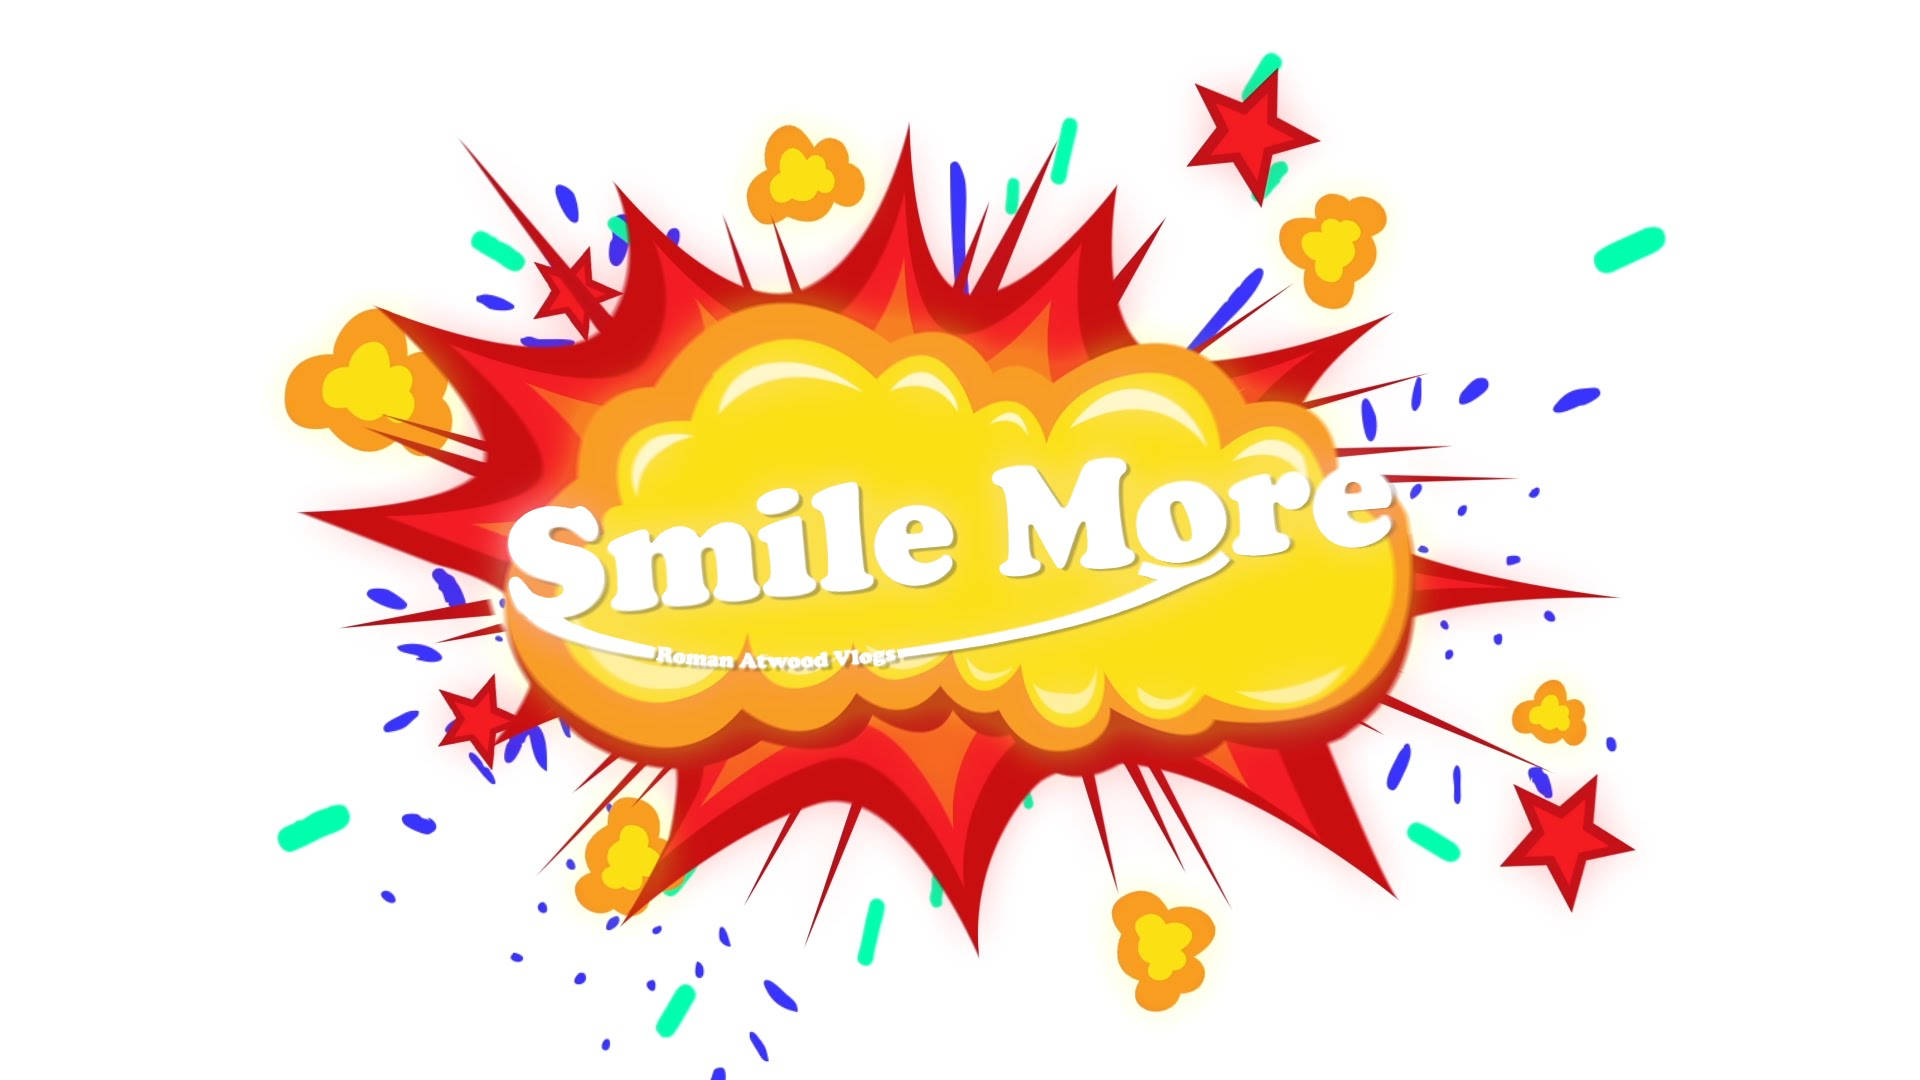 Vibrant Pop Art Inspiring "Smile More" Message Wallpaper